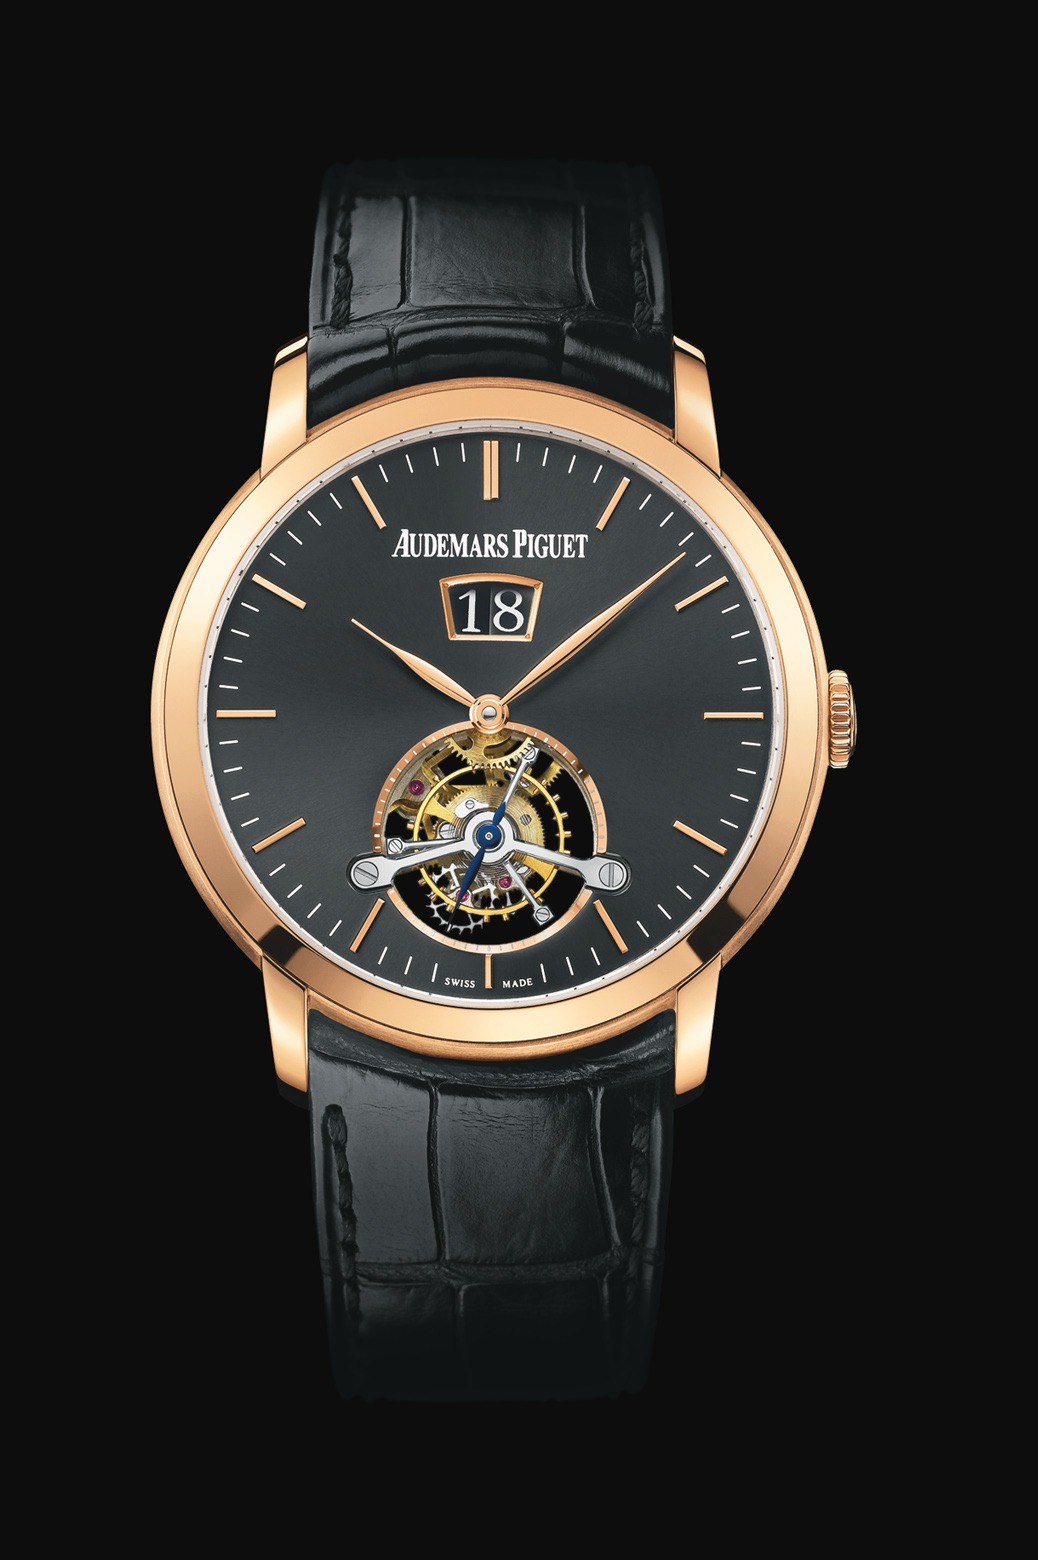 Audemars Piguet Jules Audemars Large Date Tourbillon Pink Gold watch REF: 26559OR.OO.D002CR.01